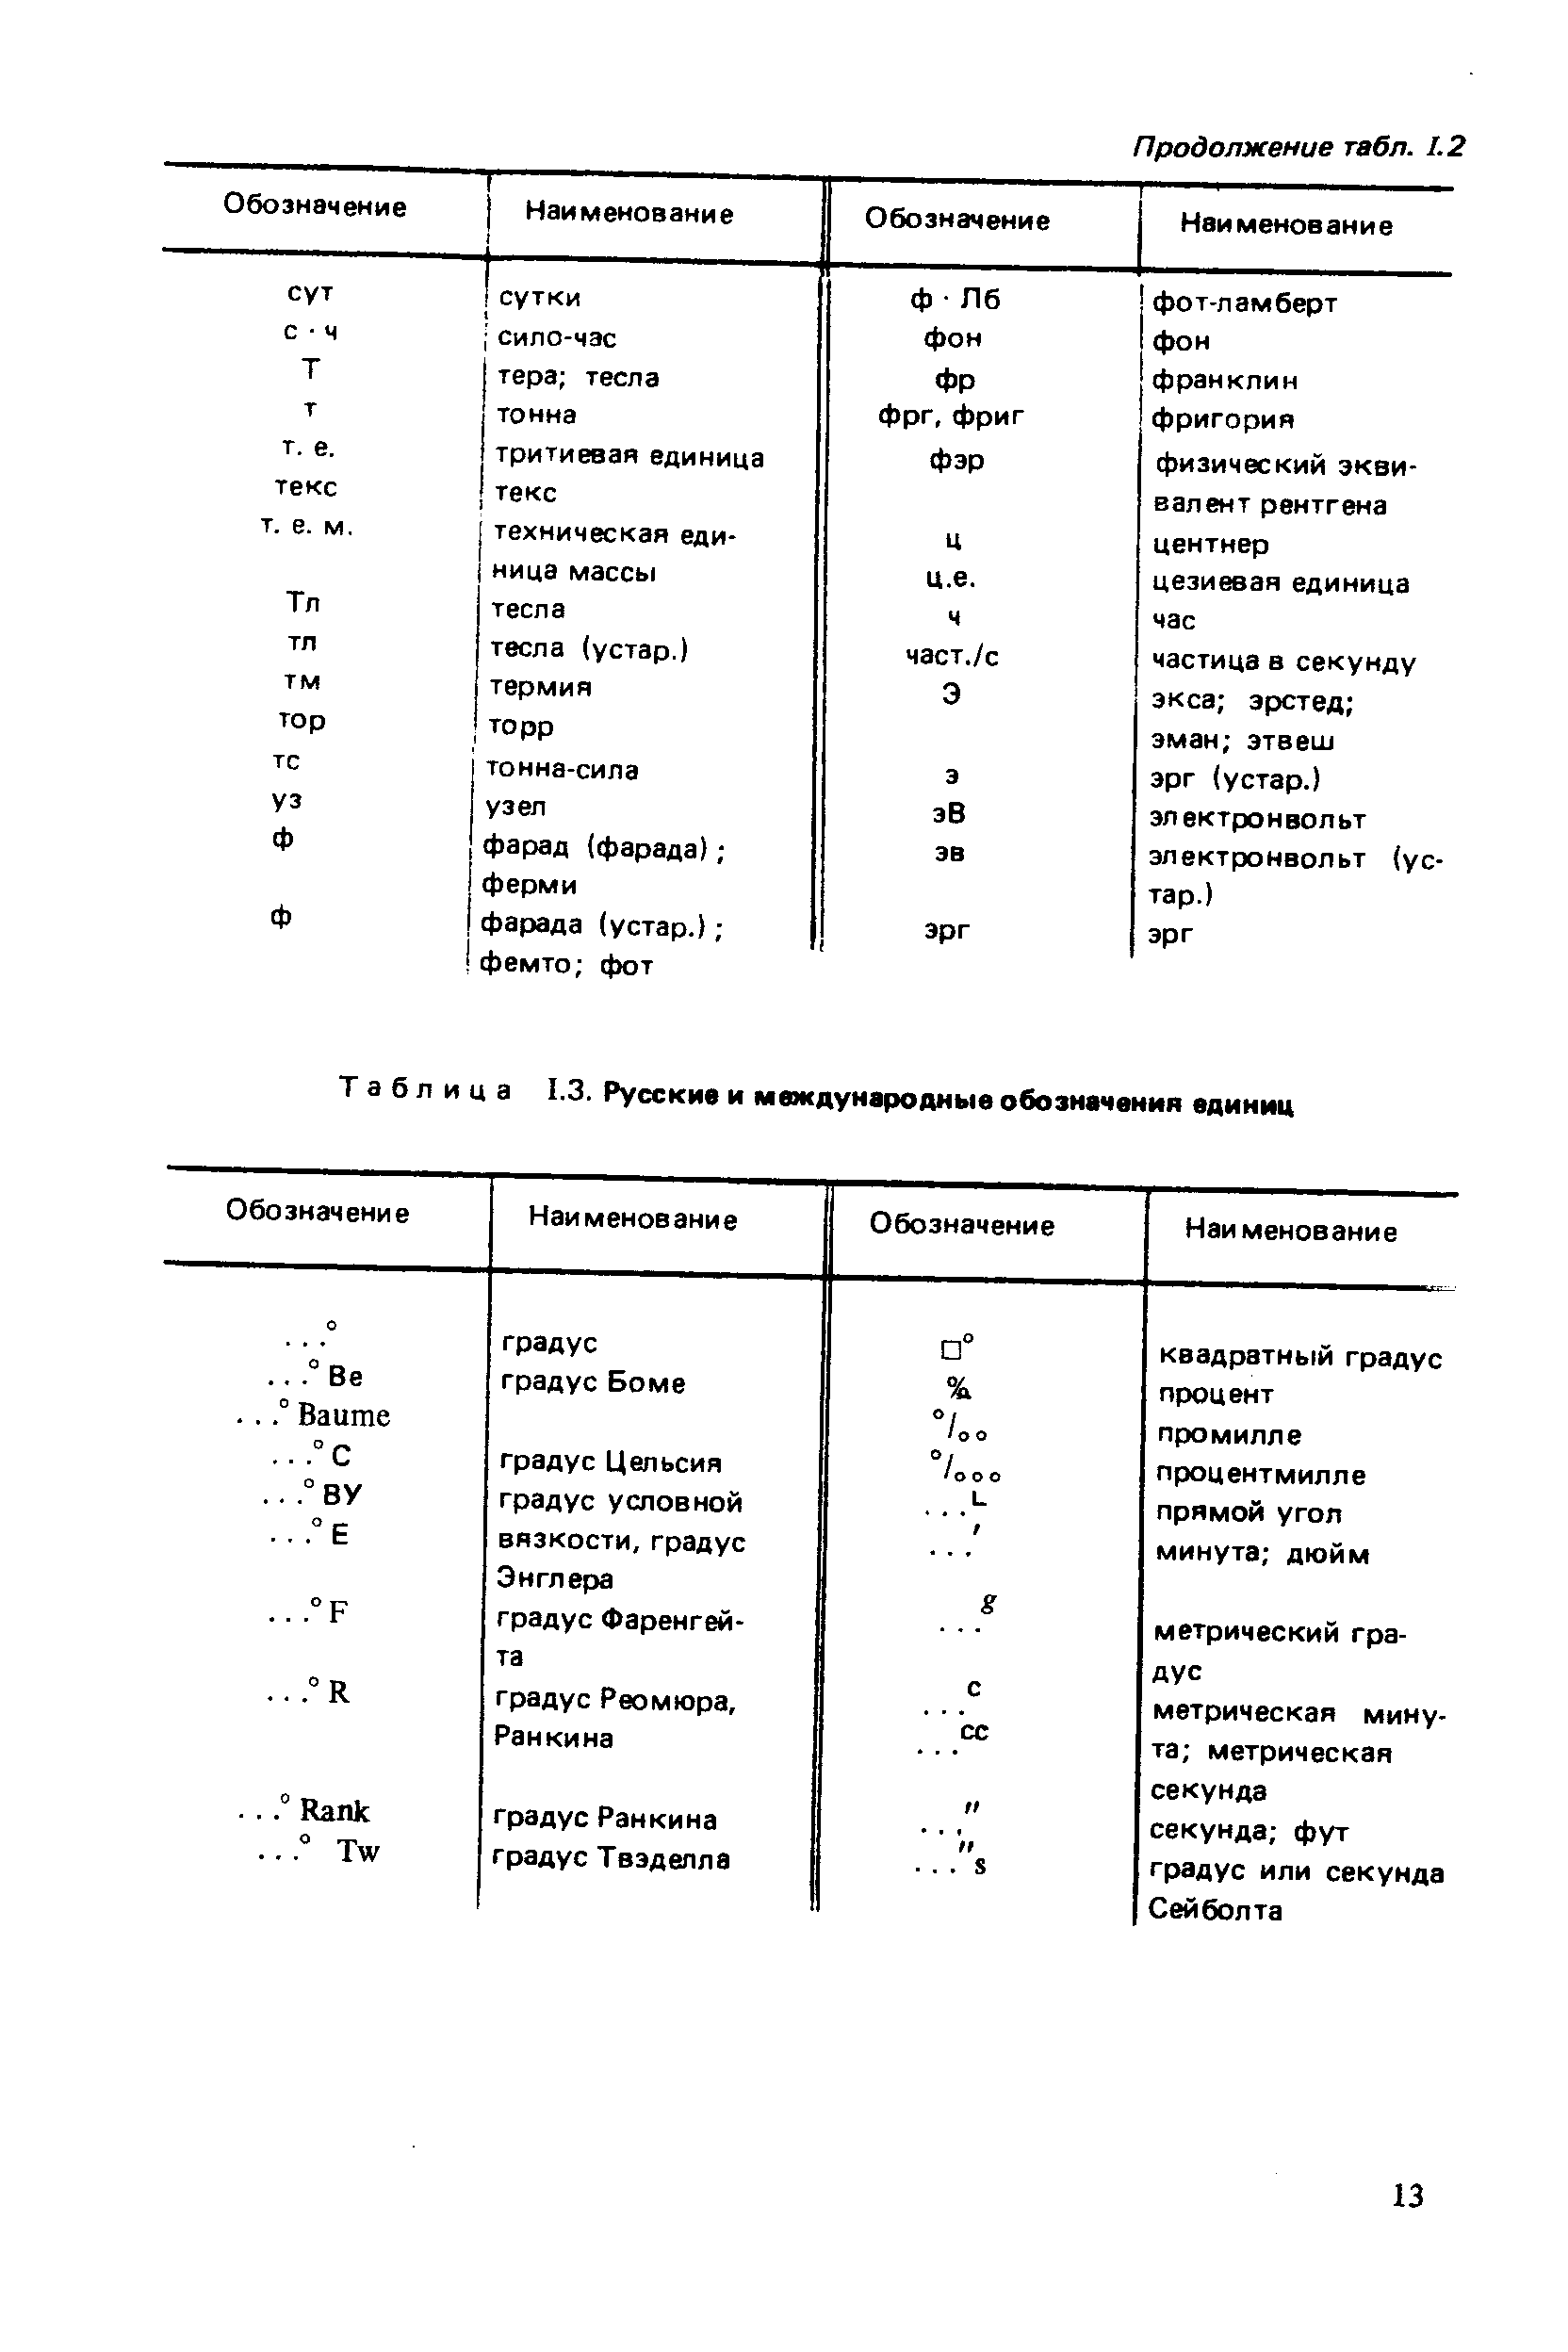 Таблица 1.3. Русские и международные обозначения единиц
